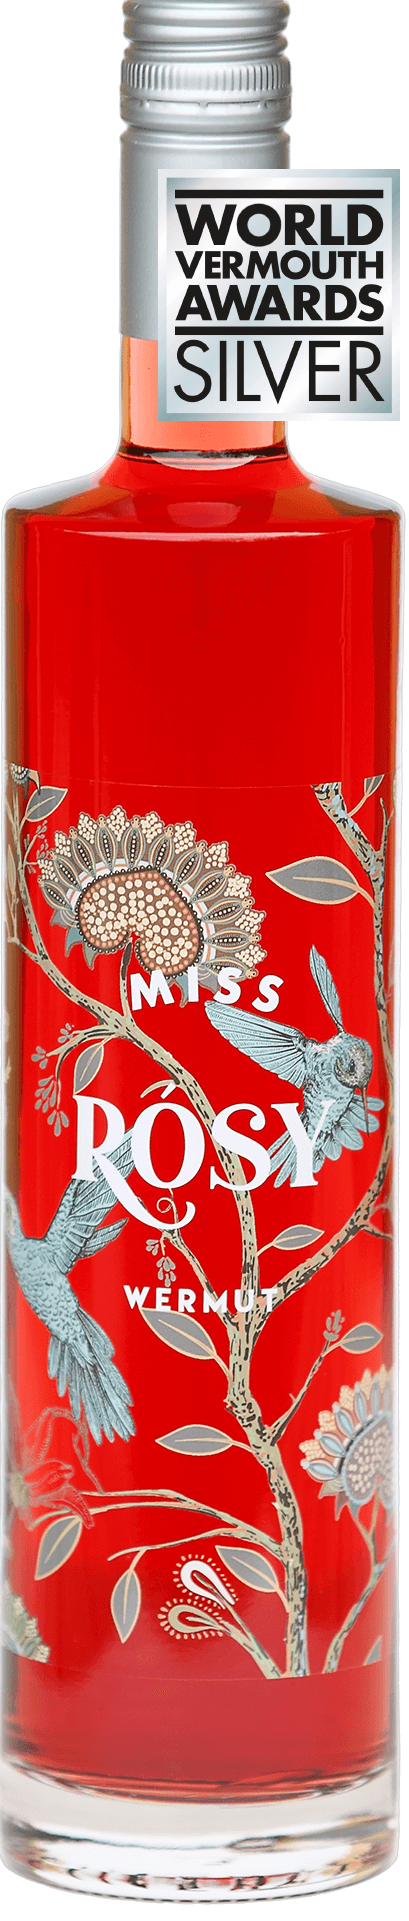 Miss Rósy Rosé 0,75 lt.